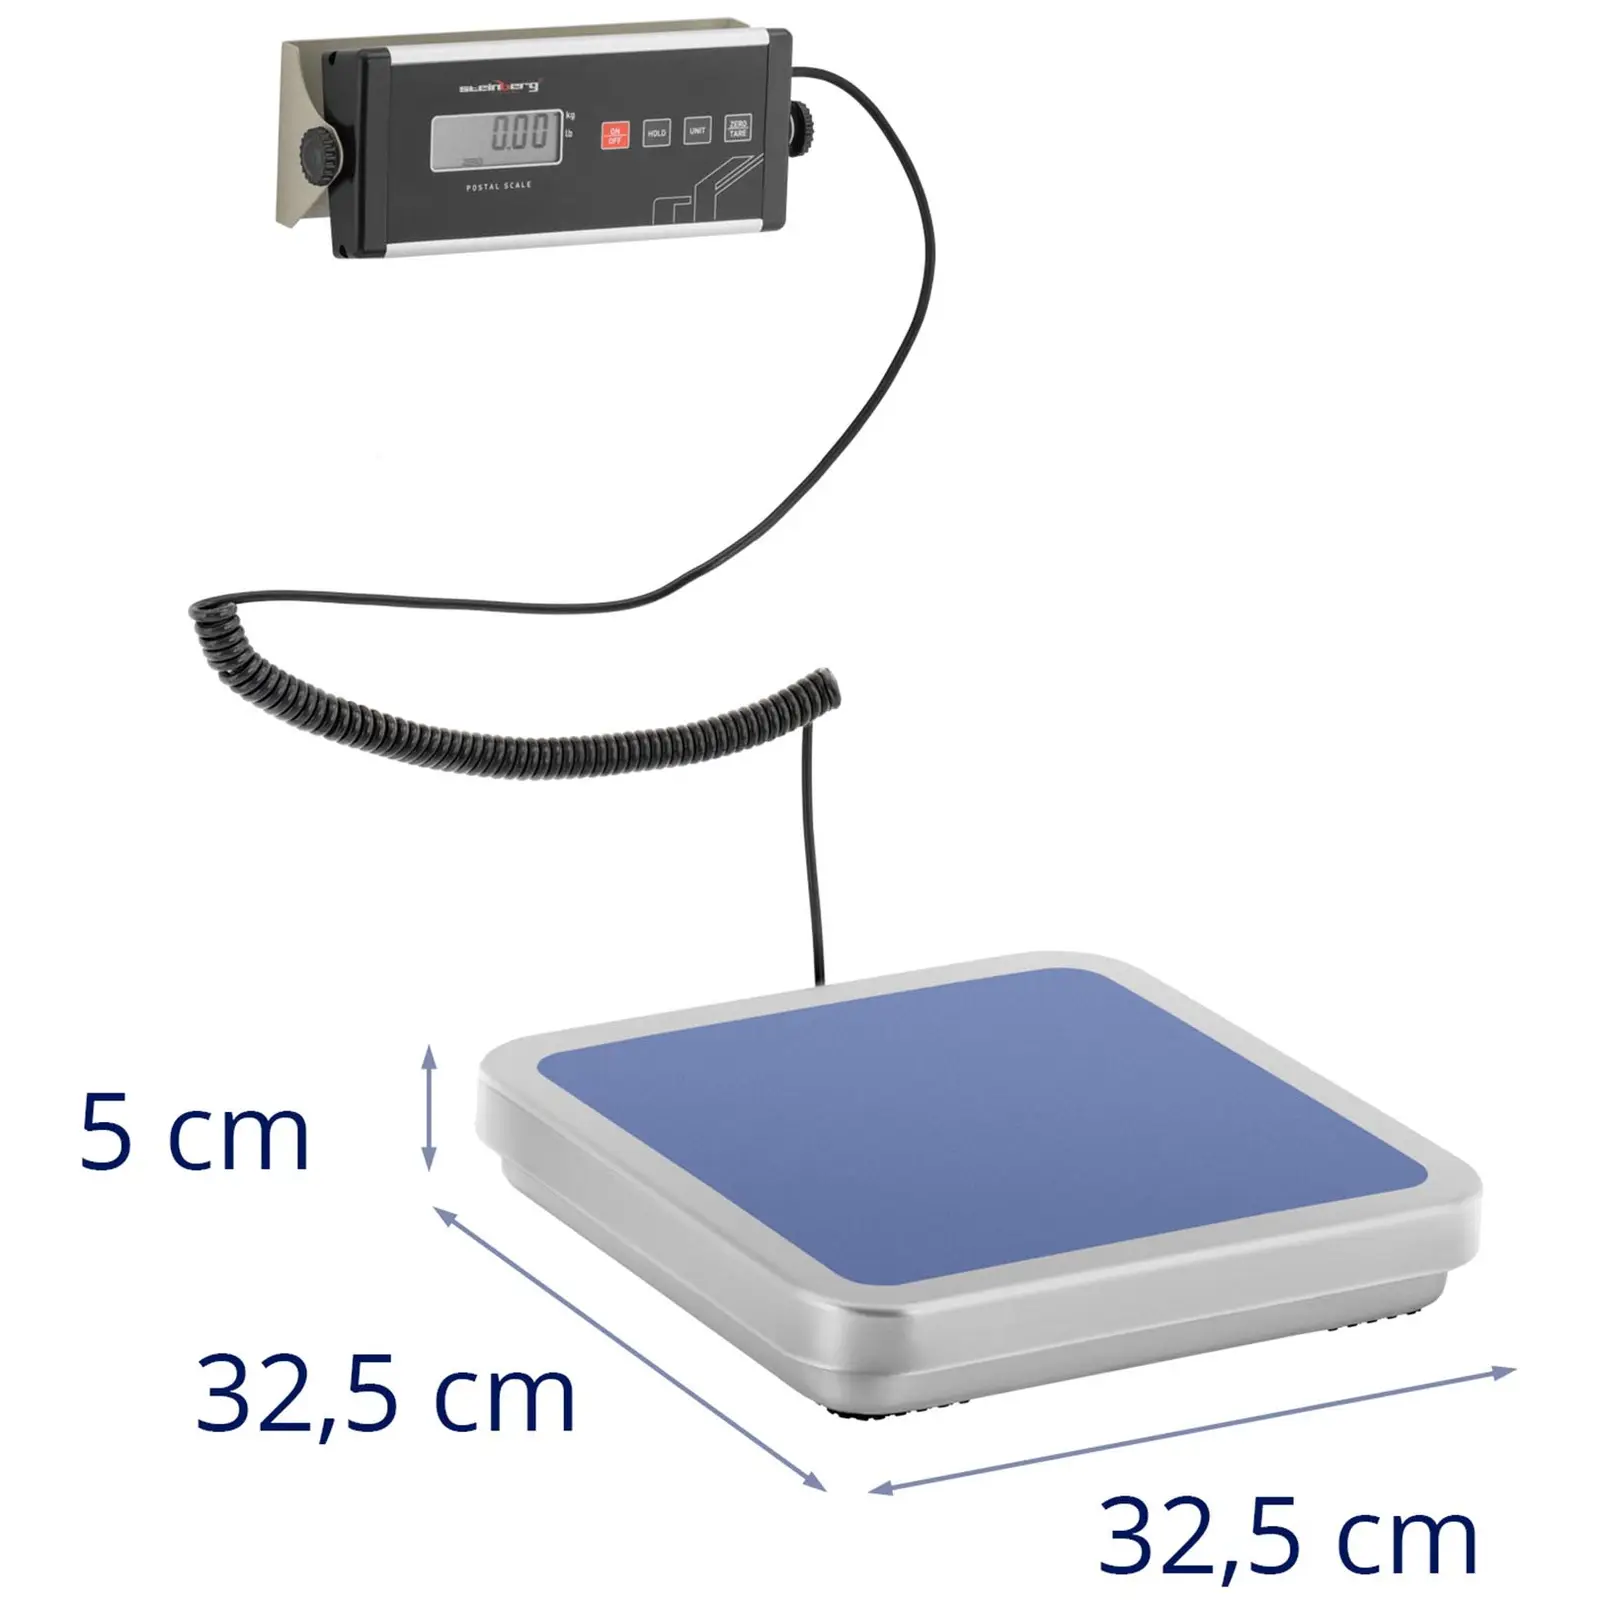 Paketwaage - 30 kg / 0,01 kg - 31,5 x 32,5 cm - externes LCD